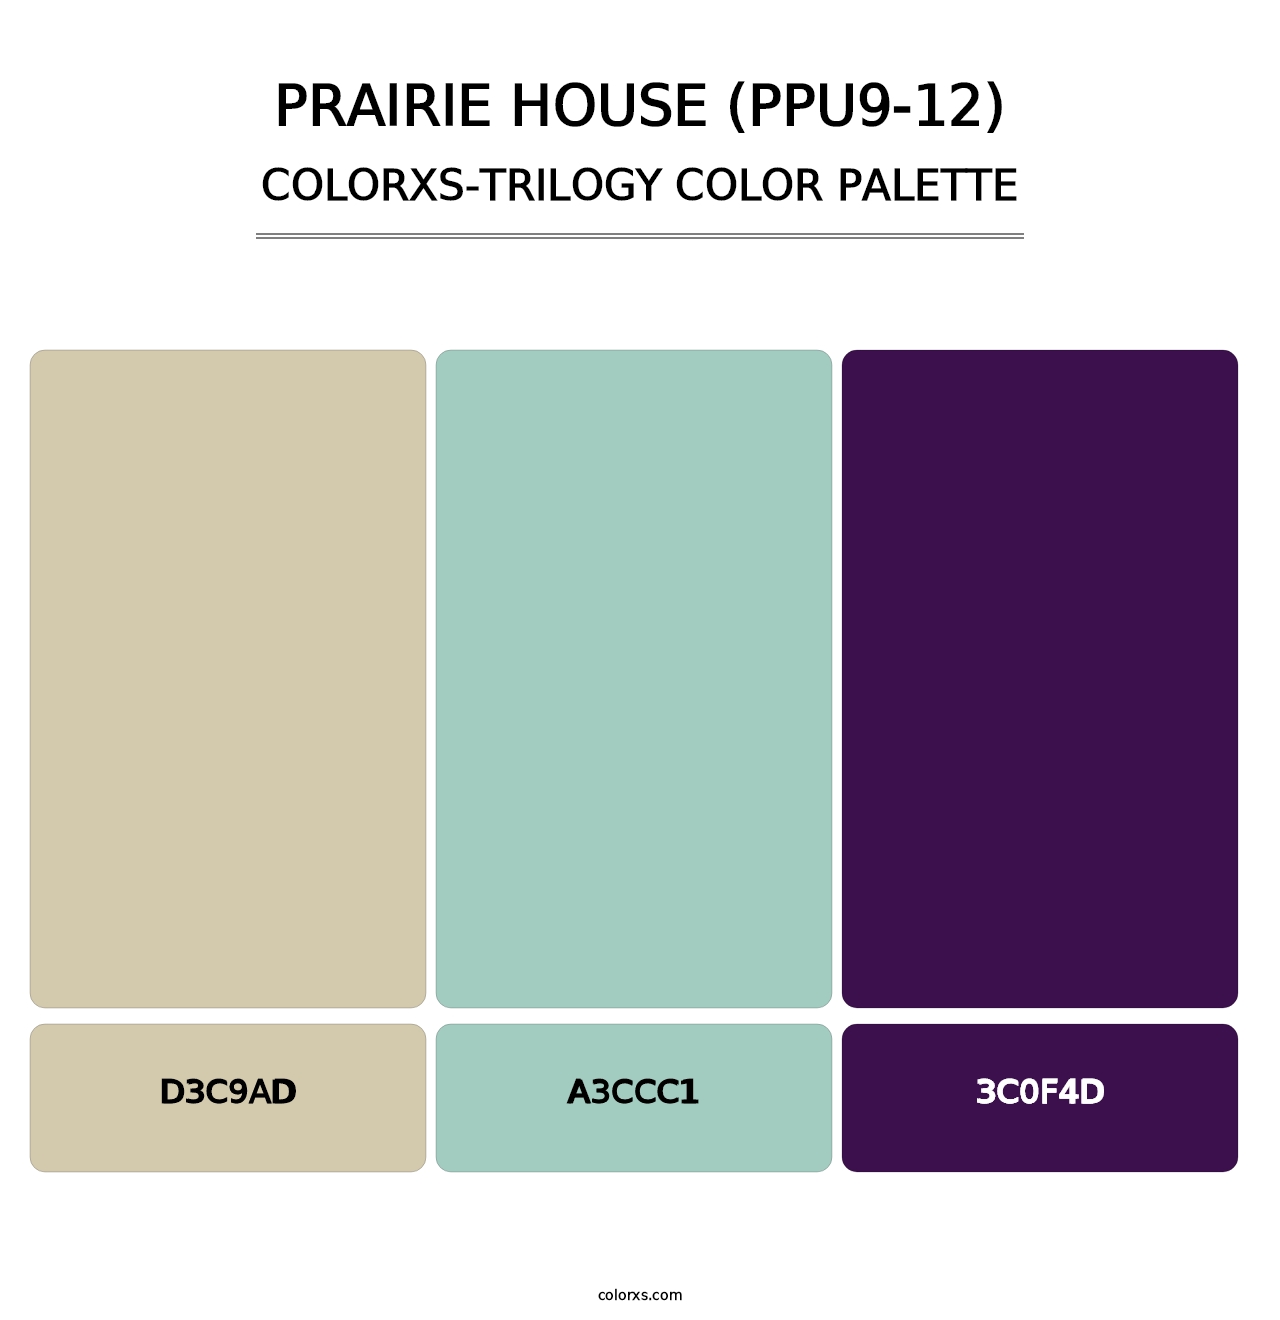 Prairie House (PPU9-12) - Colorxs Trilogy Palette